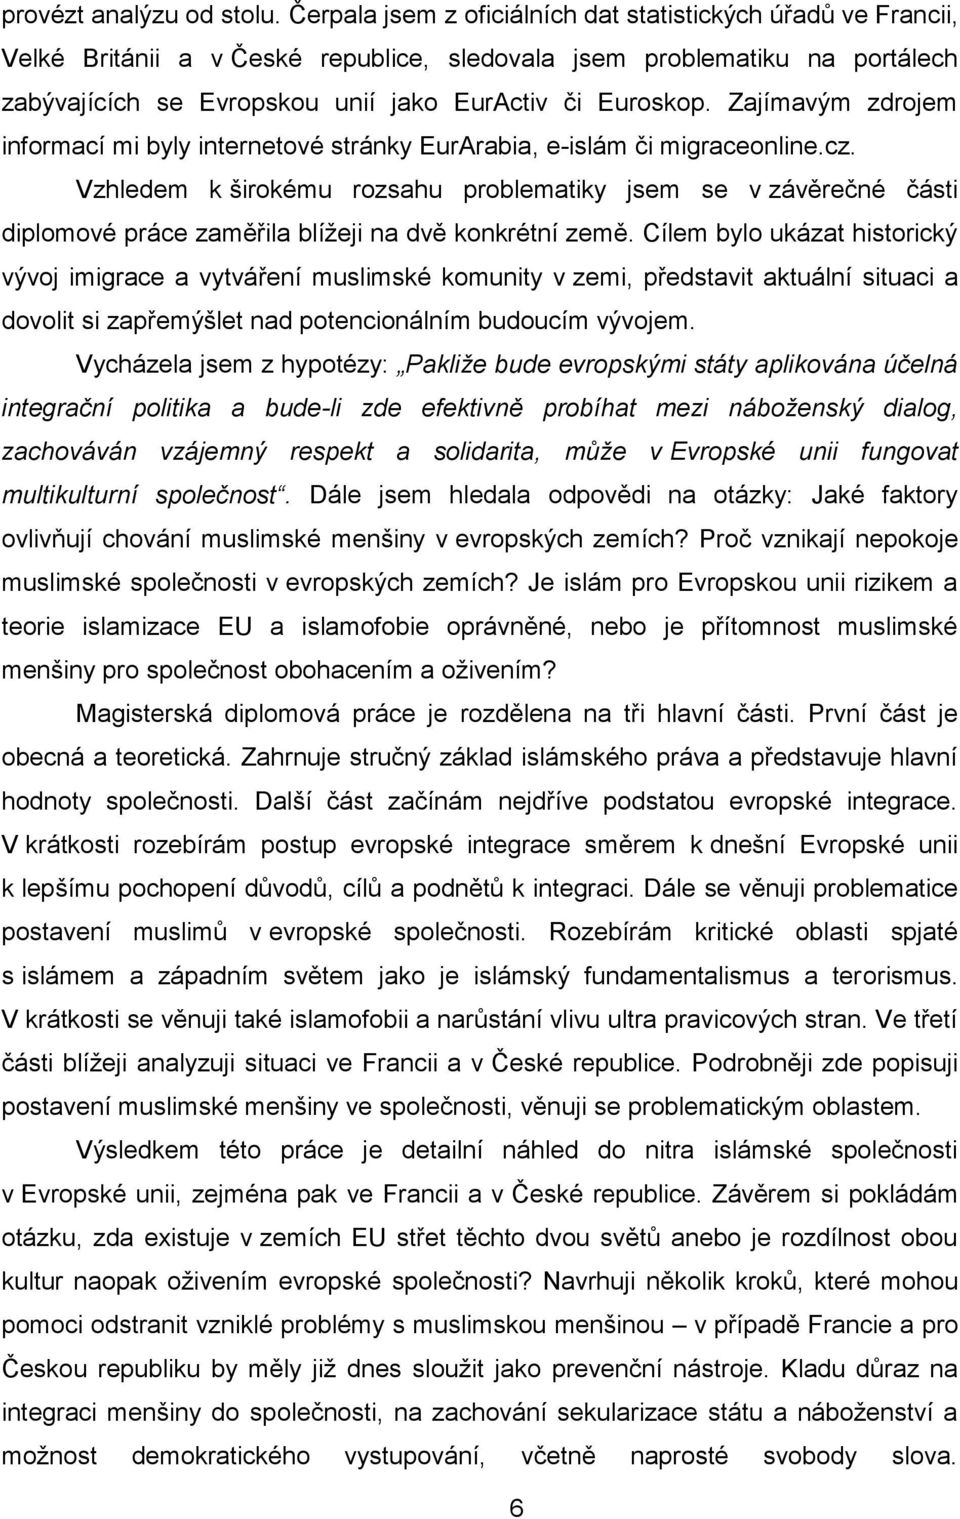 Zajímavým zdrojem informací mi byly internetové stránky EurArabia, e-islám či migraceonline.cz.